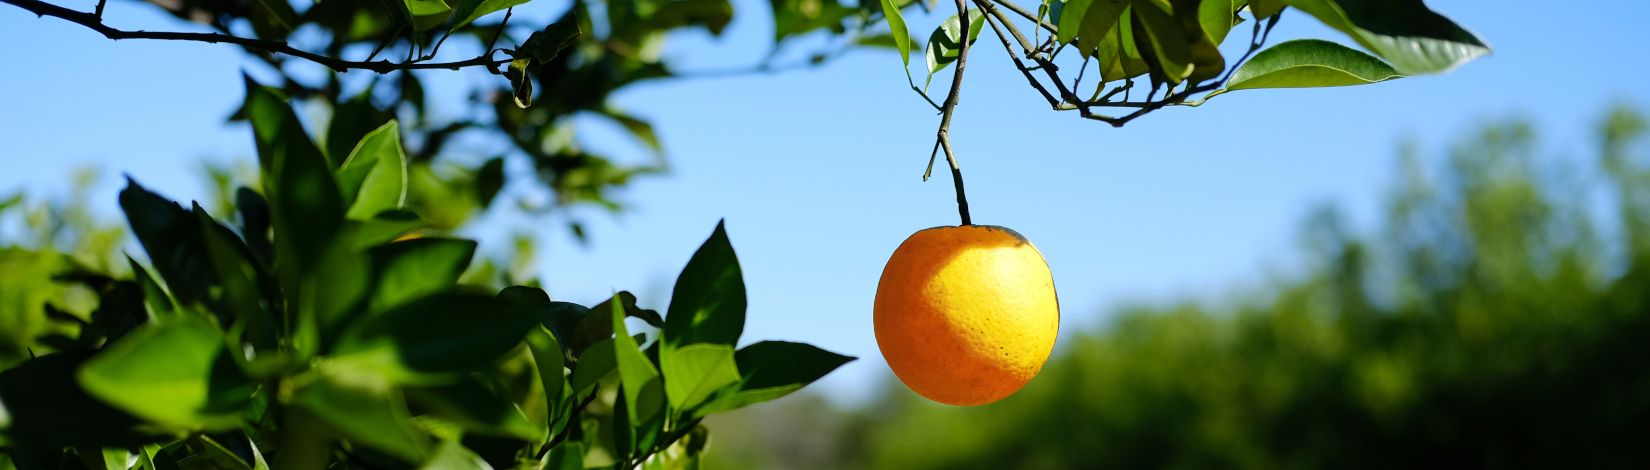 low-hanging-fruit-orange